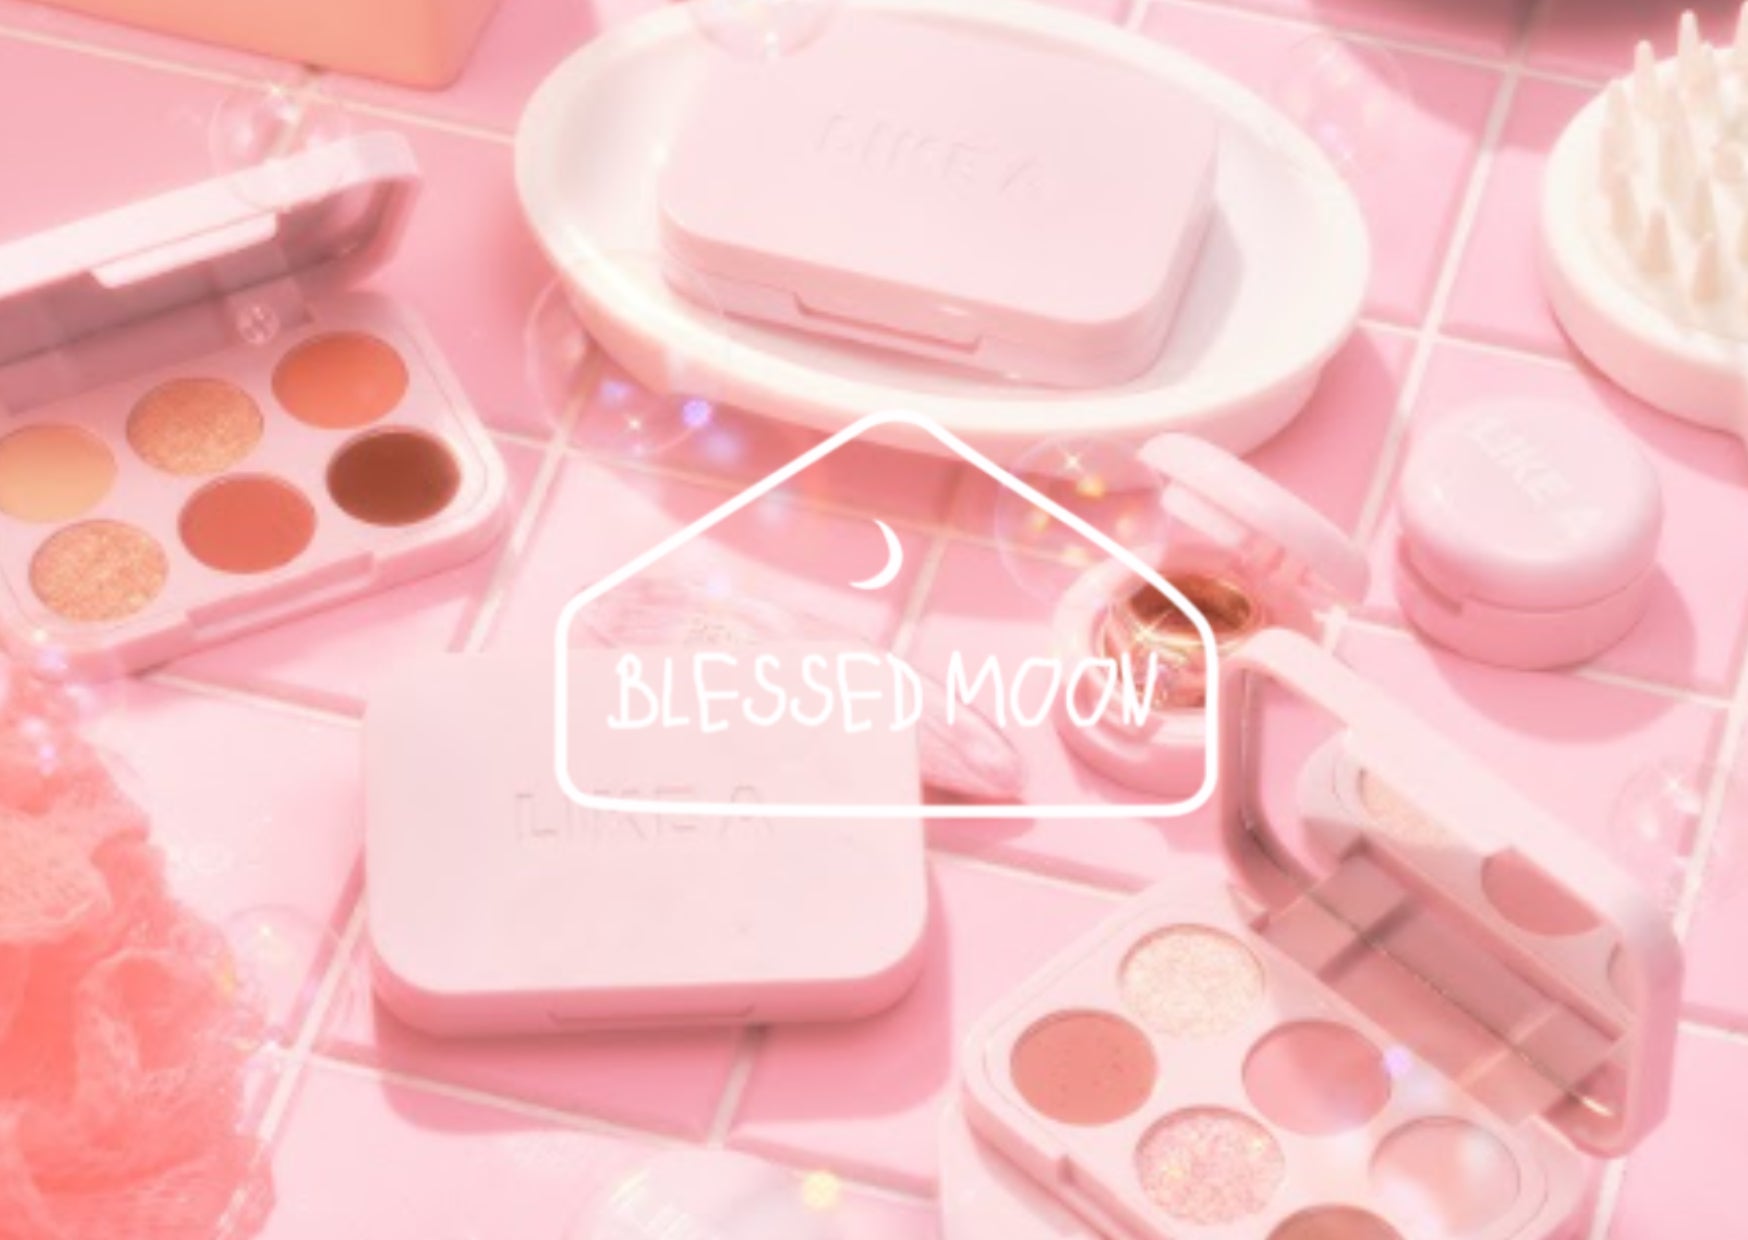 〈イベントレポート〉韓国コスメブランド “BLESSED MOON”3月14日に新商品発表会を開催